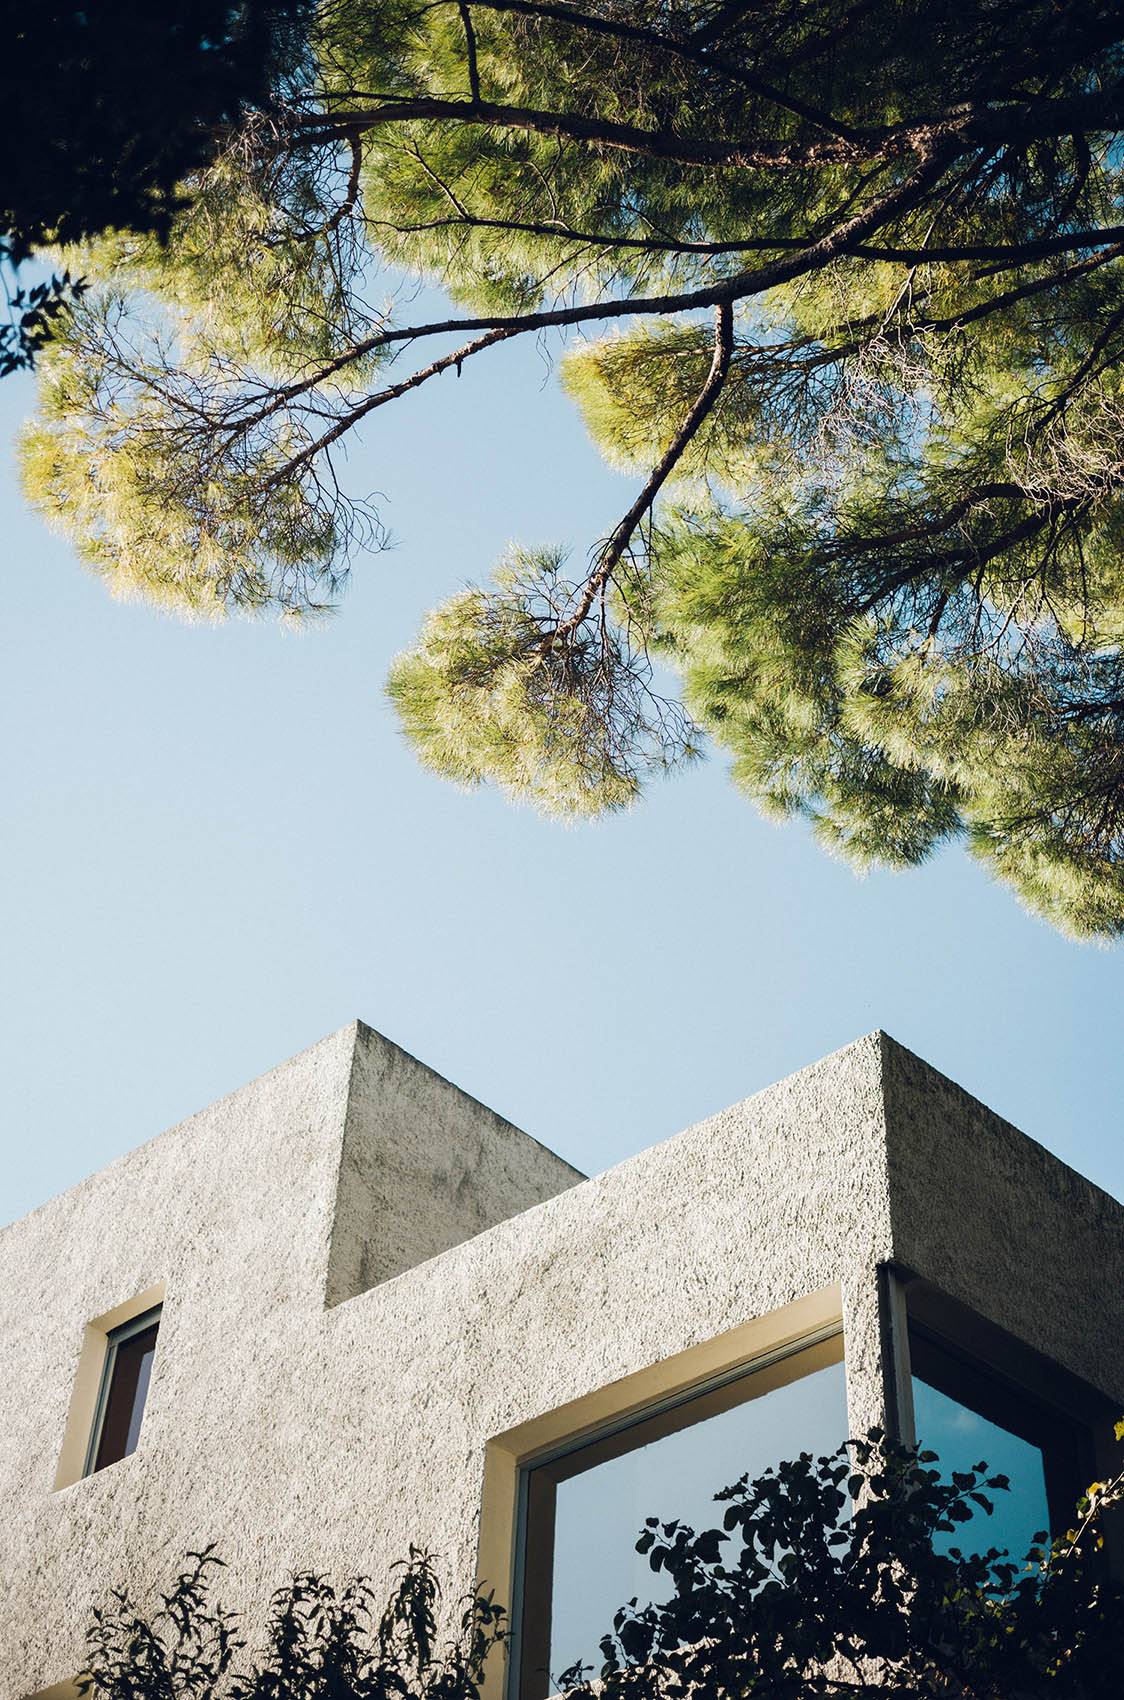 Villa Noailles (Fot. Theo Giacomett)